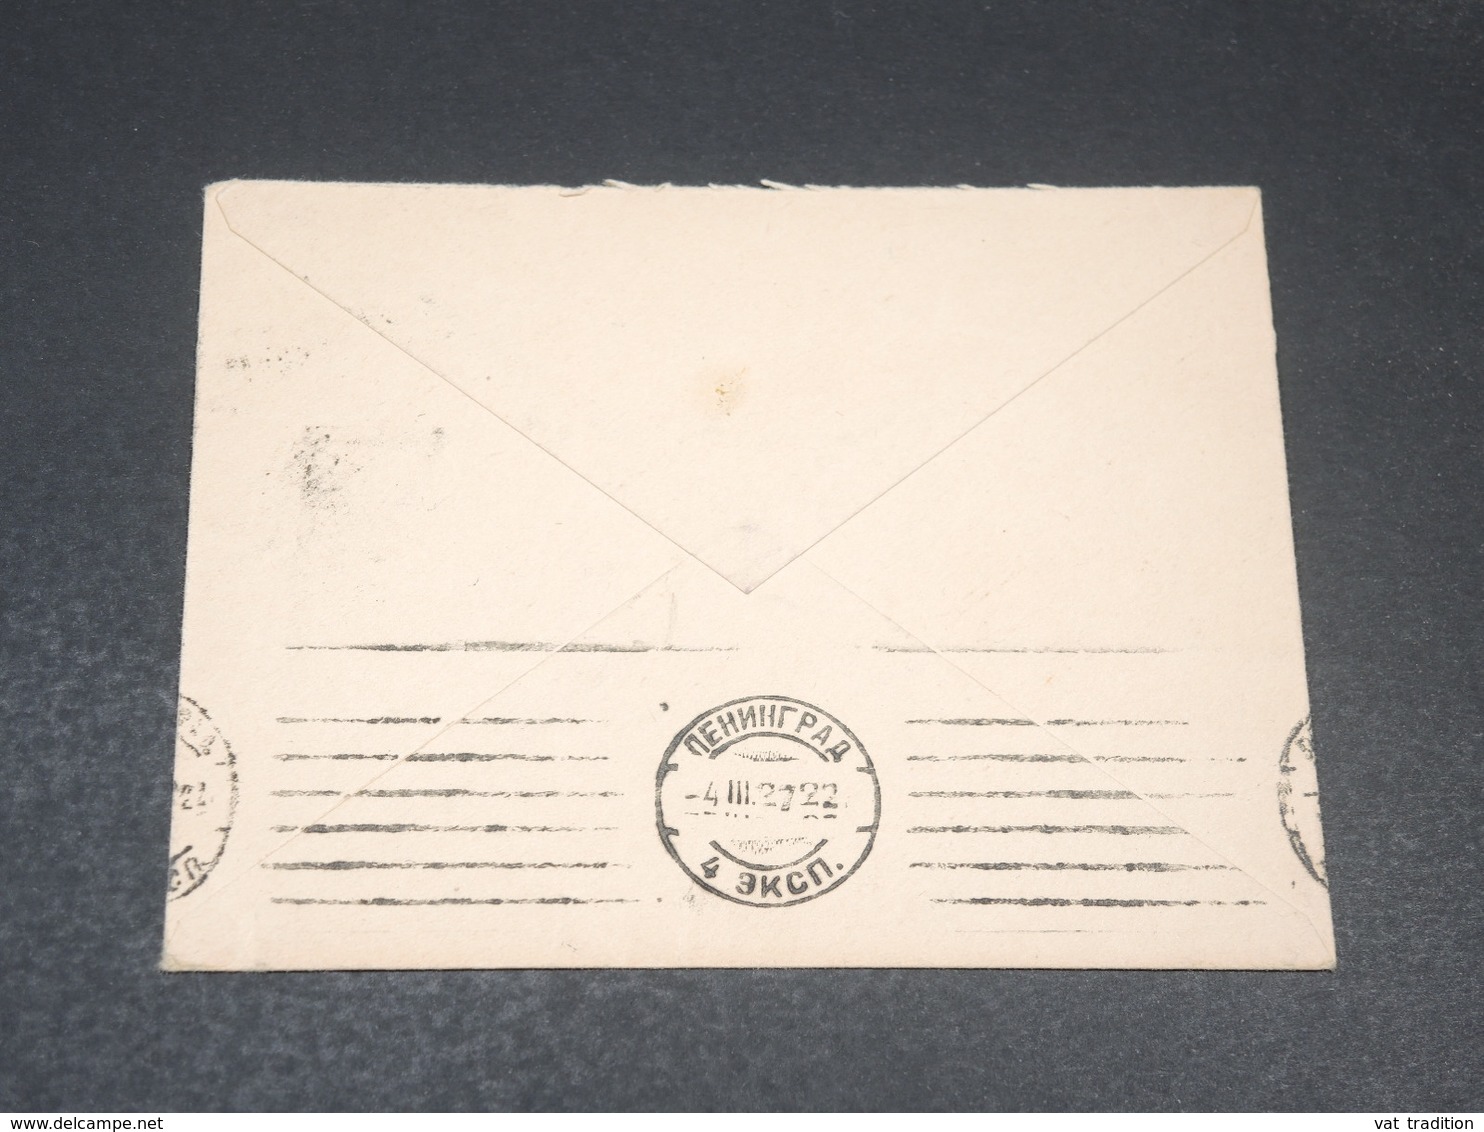 U.R.S.S. - Enveloppe Pour Luzern En 1927 - L 19781 - Briefe U. Dokumente